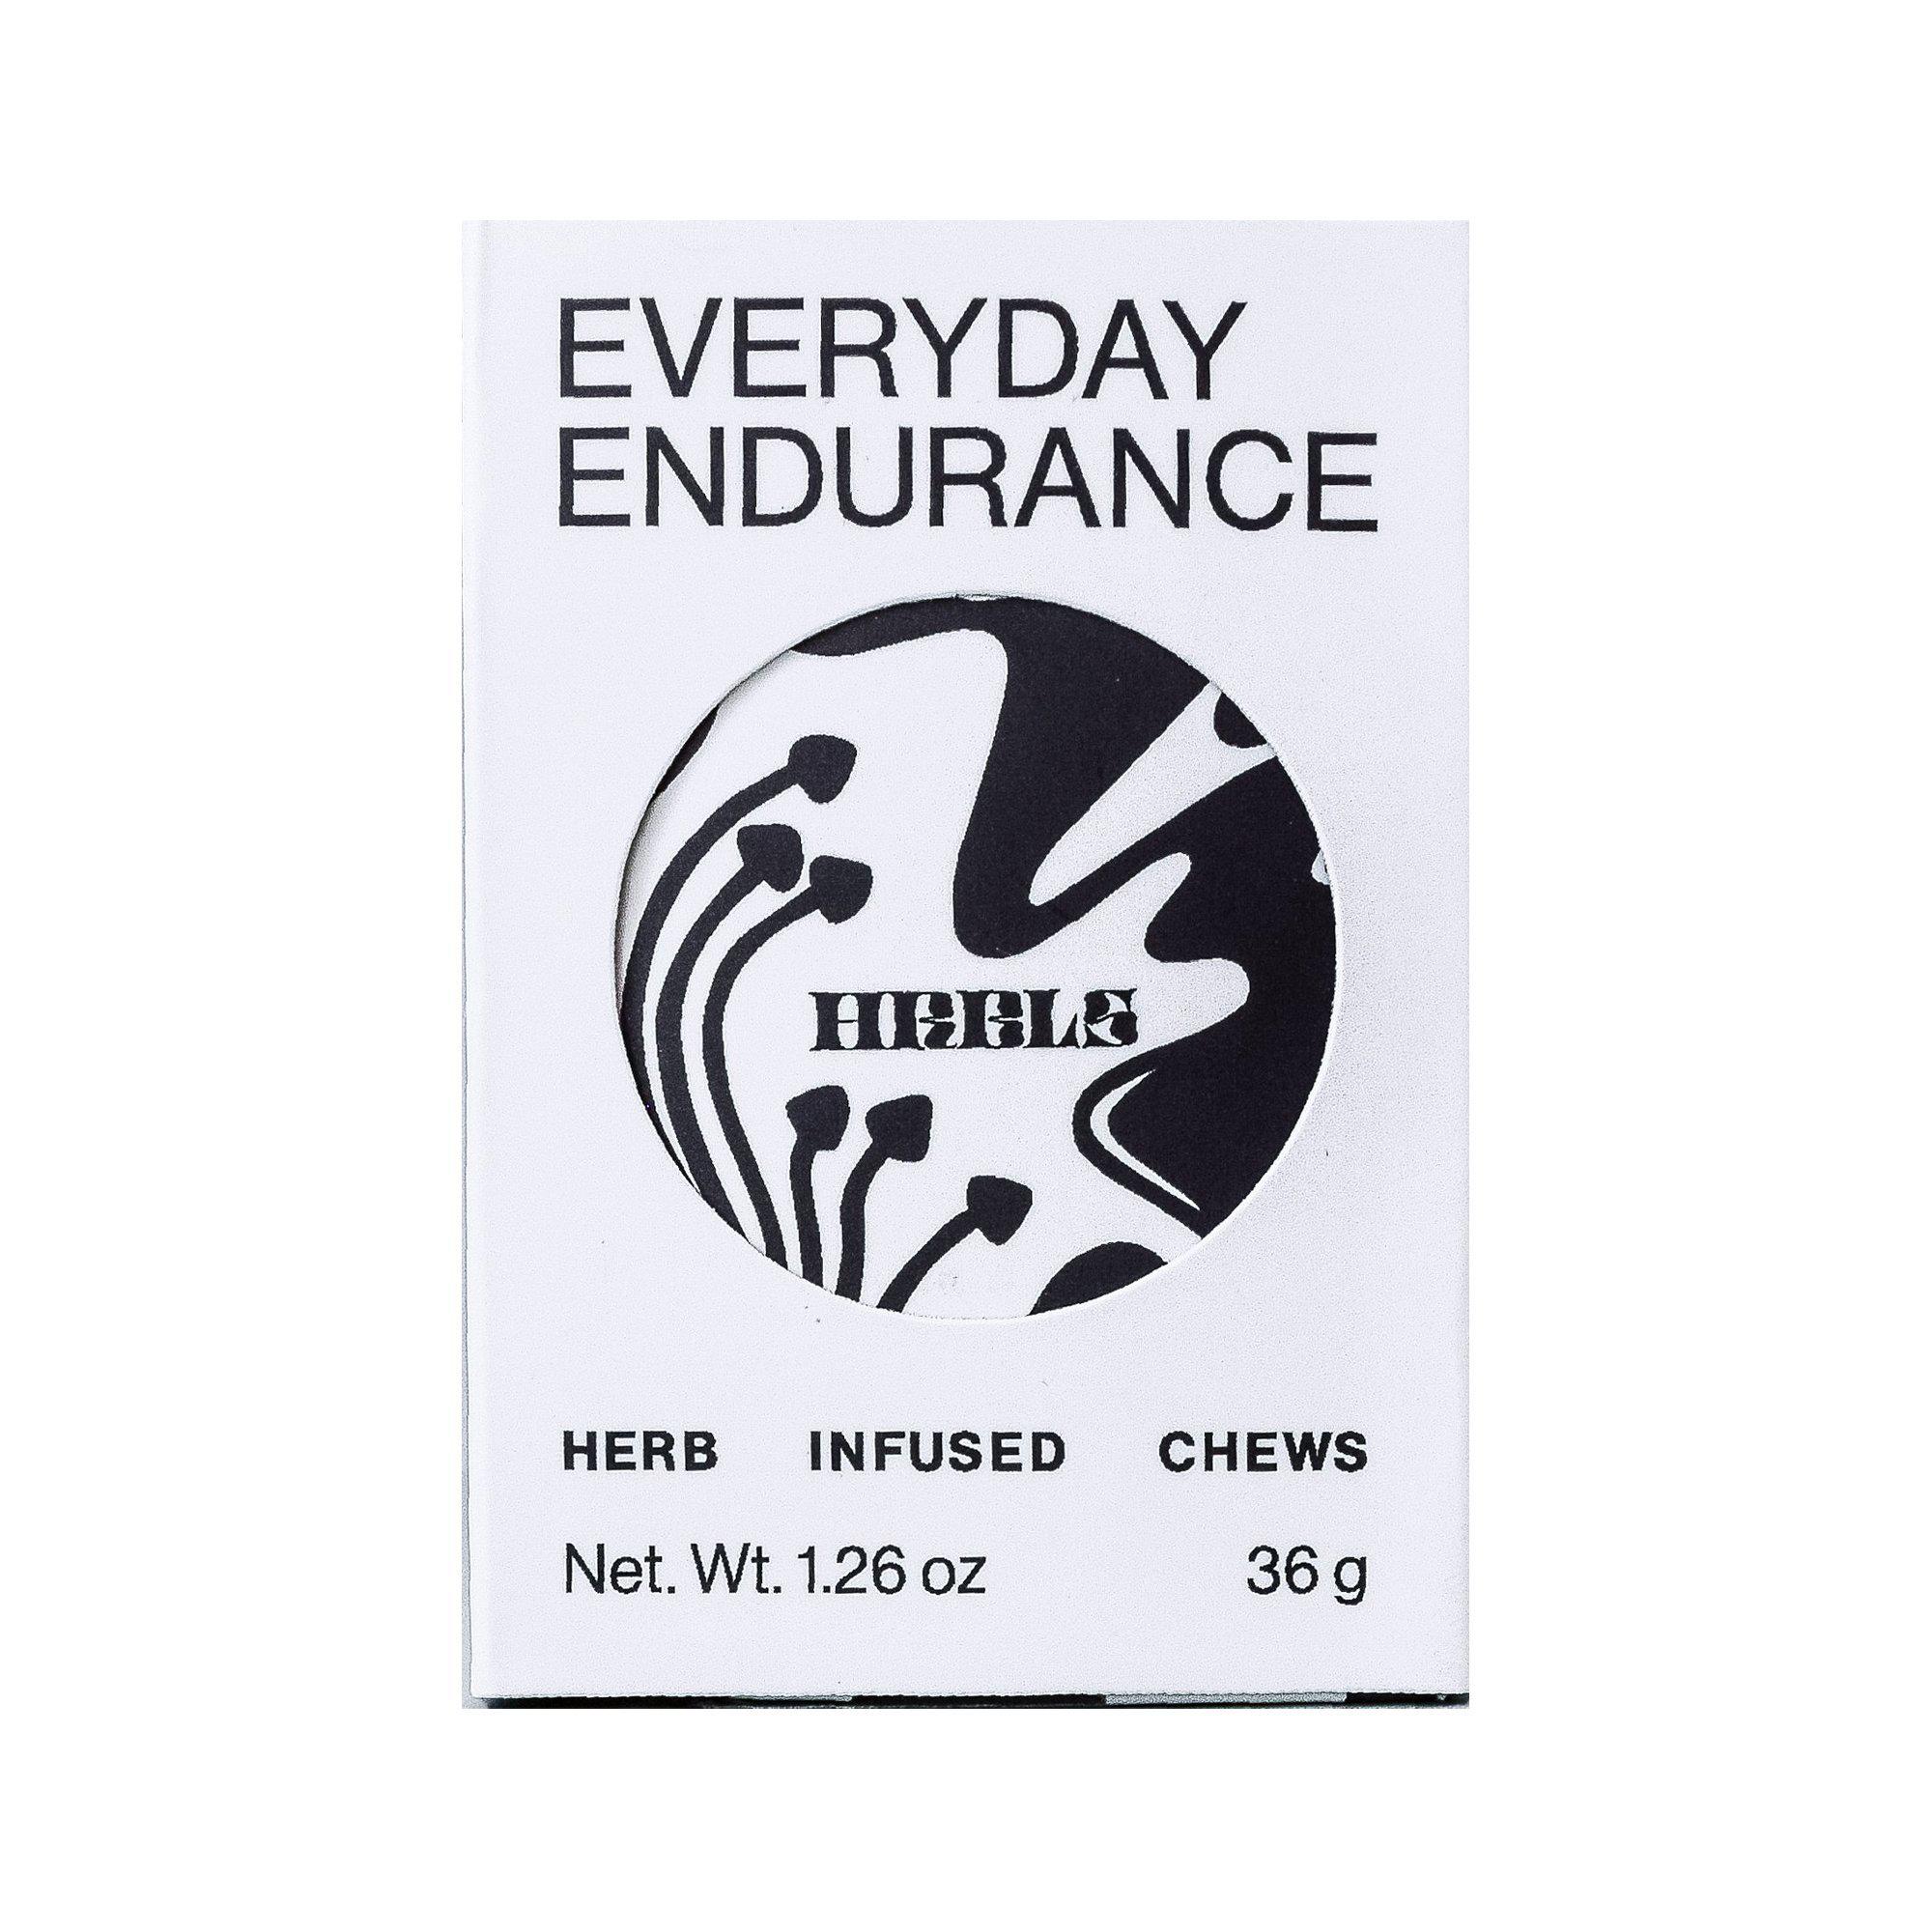 Indisponible - HRBLS Gummies Énergie Everyday Endurance Unavailable - HRBLS Everyday Endurance Energy Gummies - Supernatural